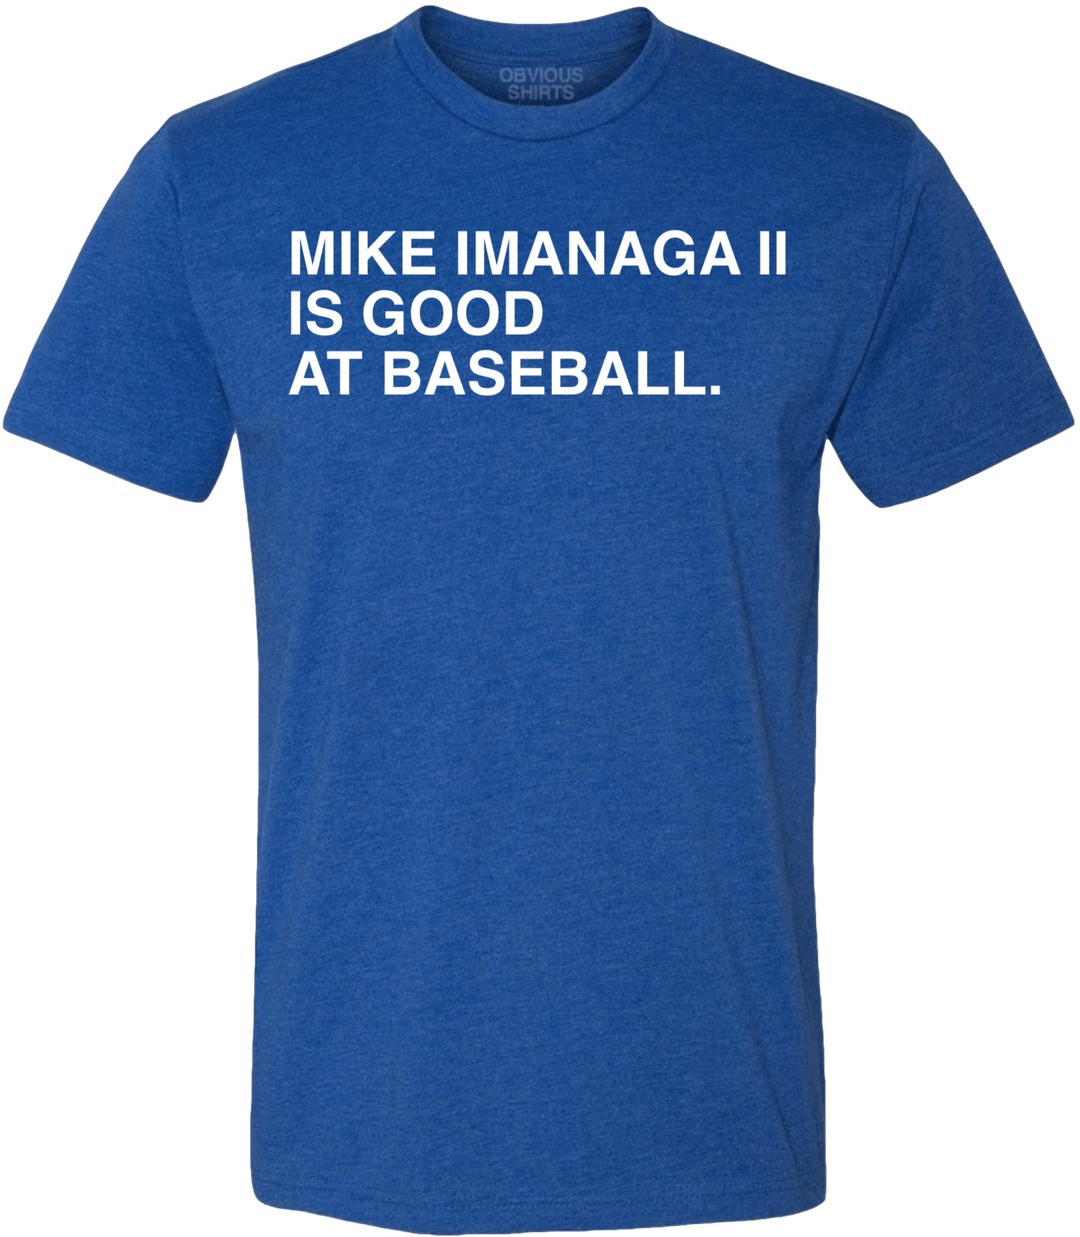 MIKE IMANAGA II IS GOOD AT BASEBALL. - OBVIOUS SHIRTS